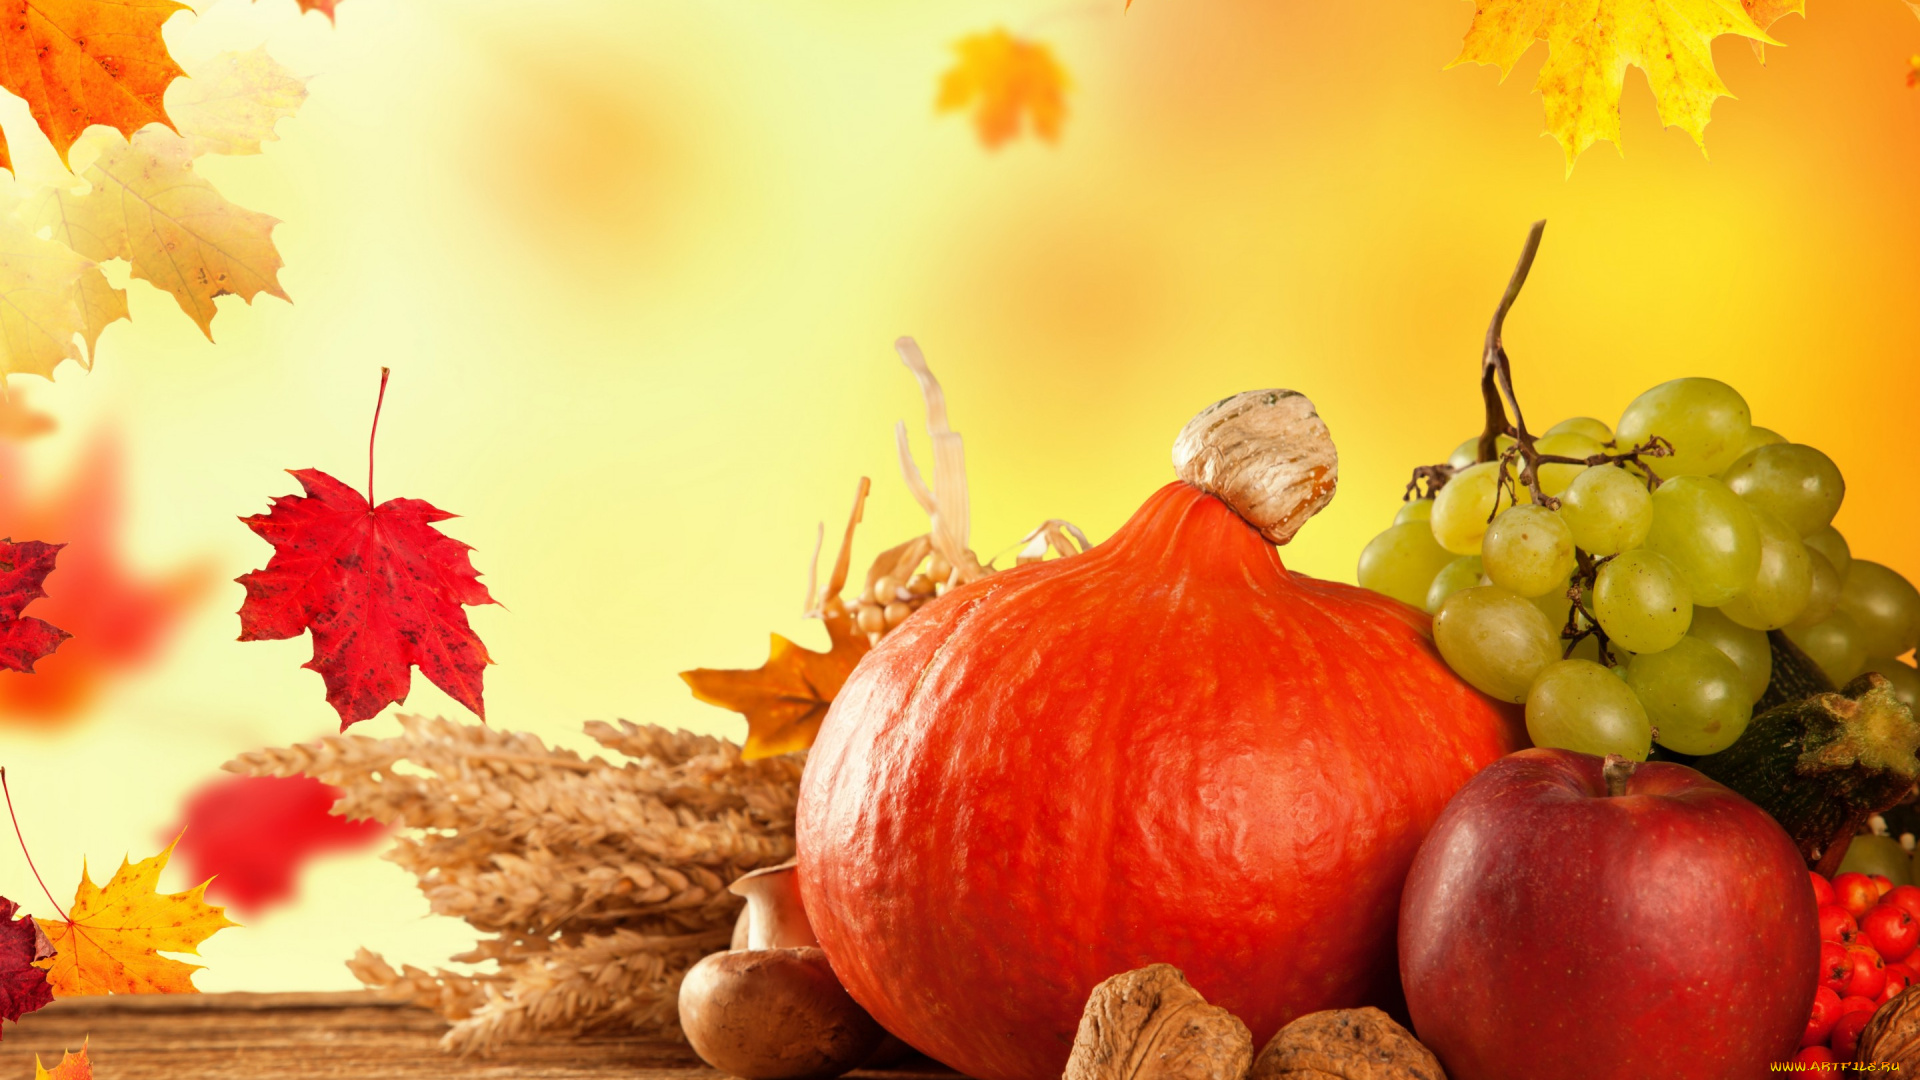 еда, фрукты, и, овощи, вместе, тыква, fruits, виноград, урожай, листья, осень, pumpkin, still, life, autumn, harvest